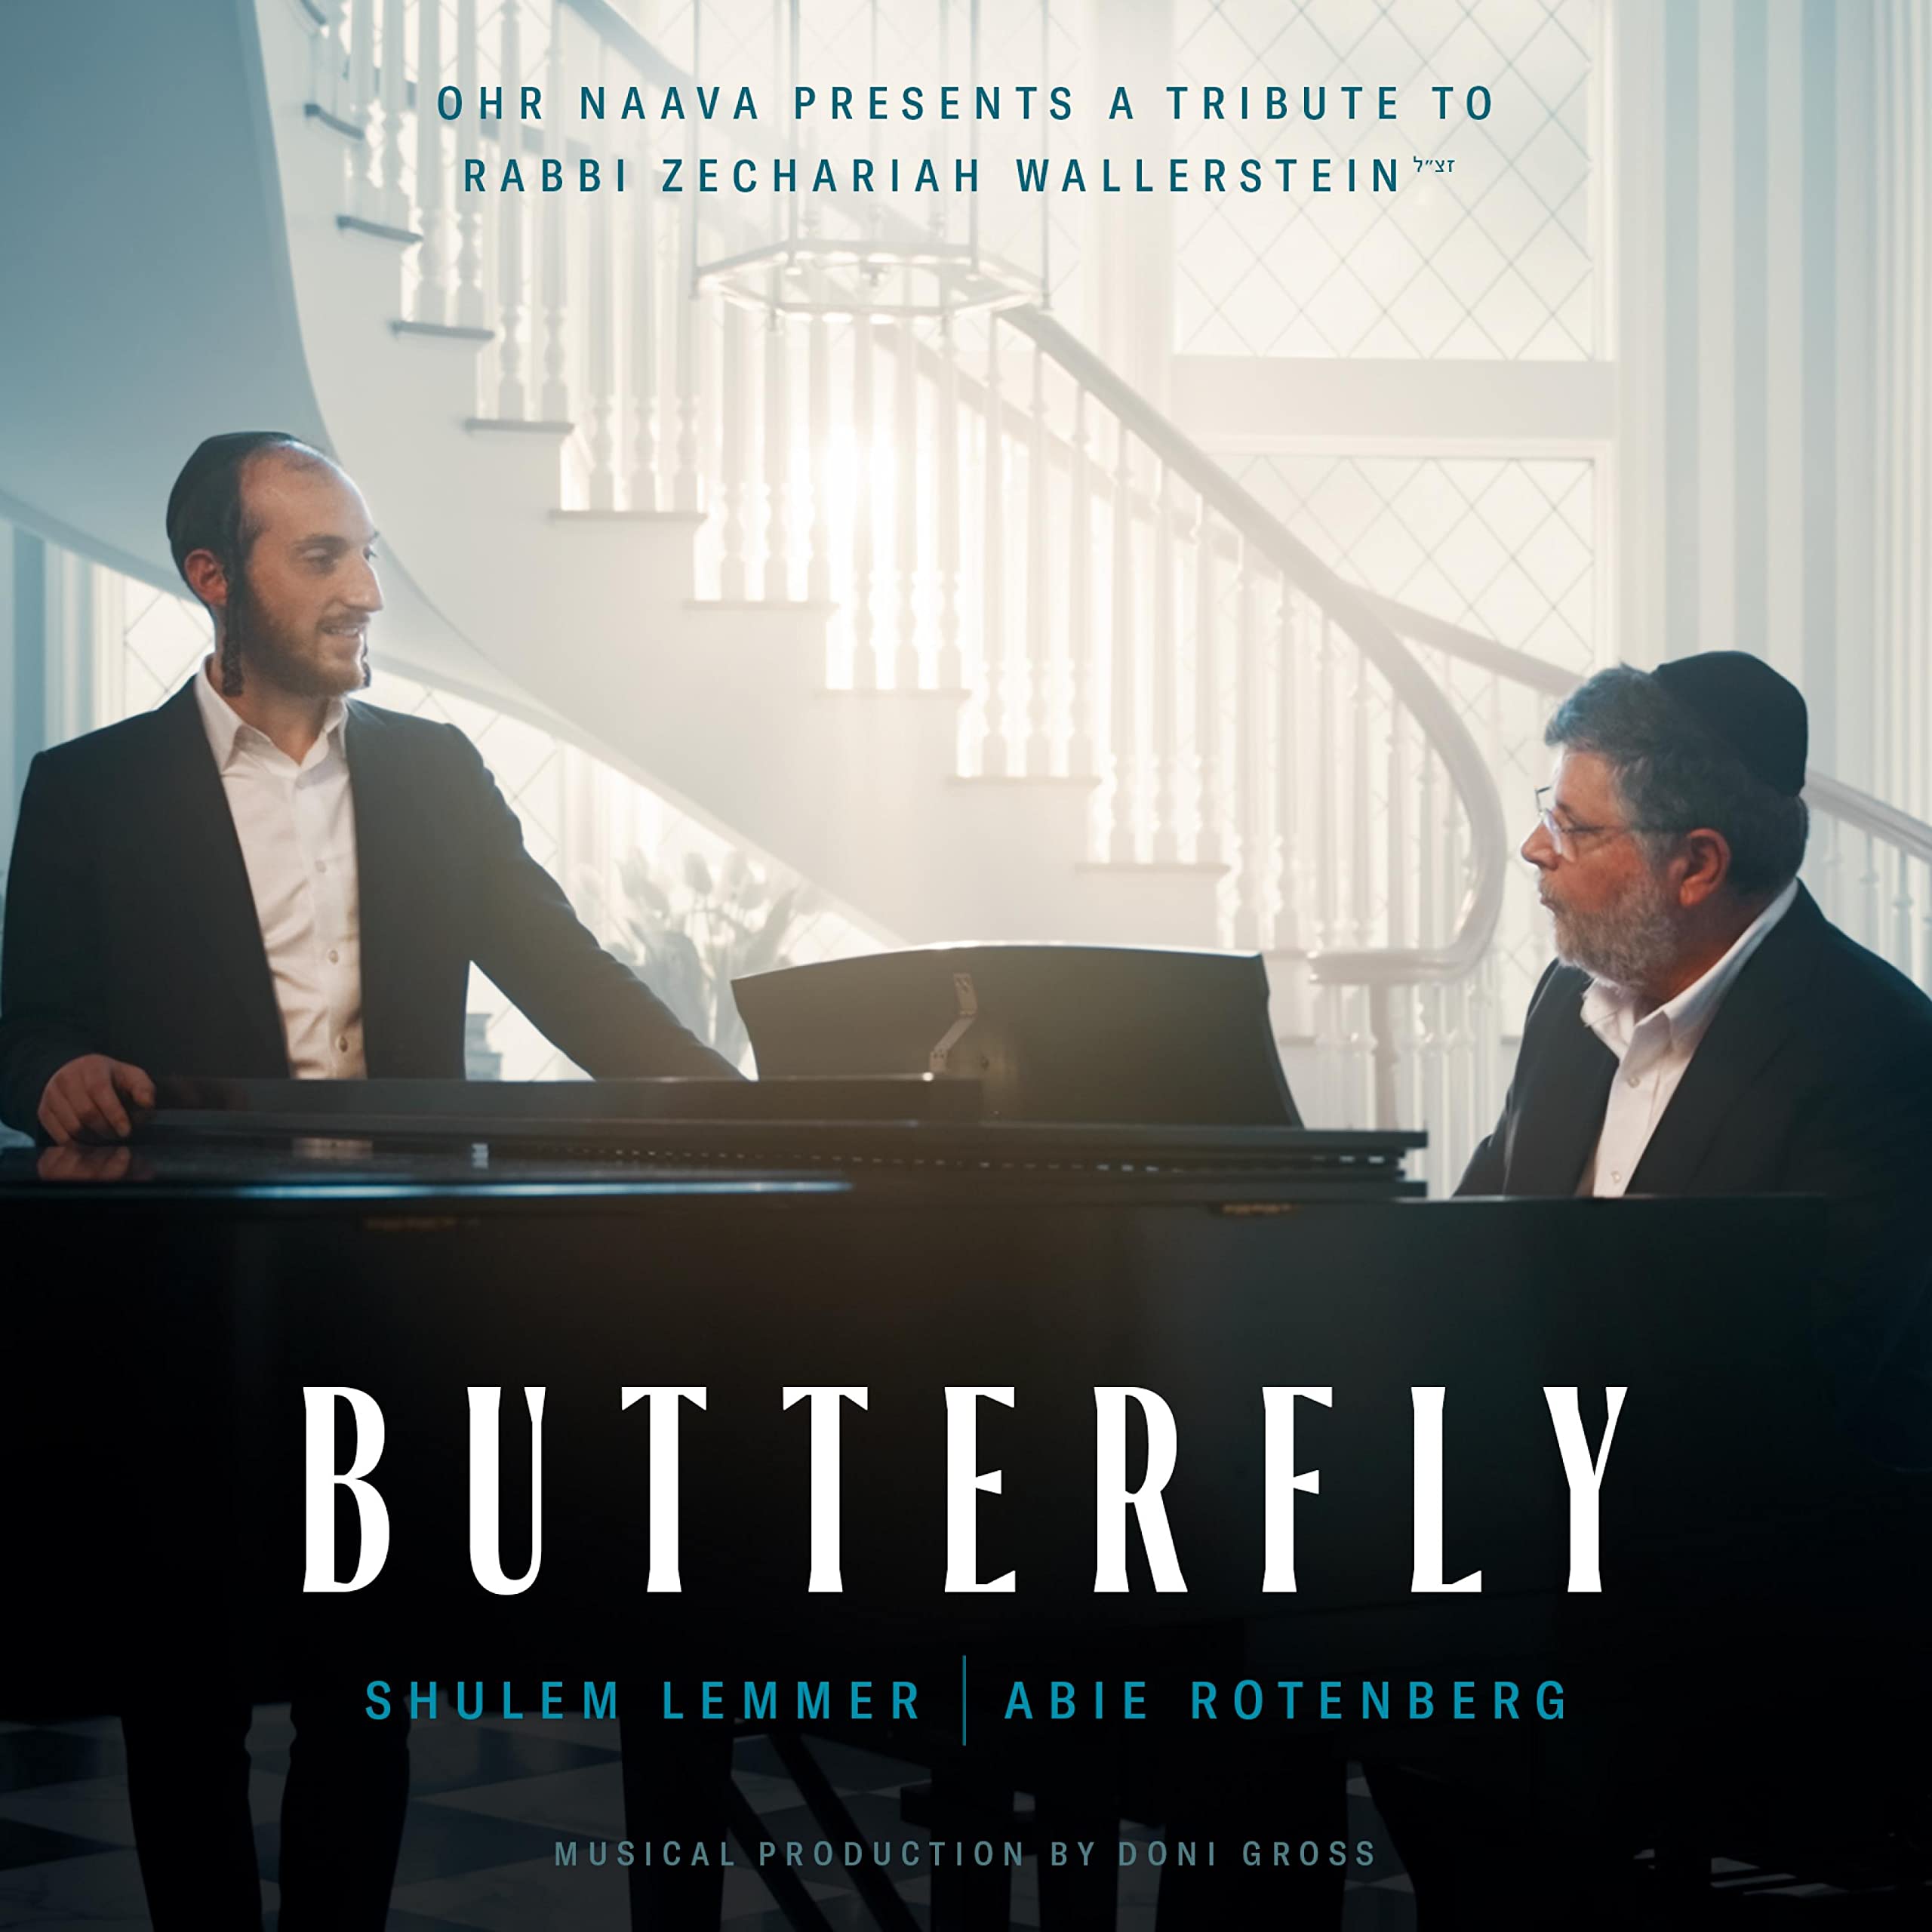 Shulem Lemmer & Abie Rottenberg - Butterfly (Single)